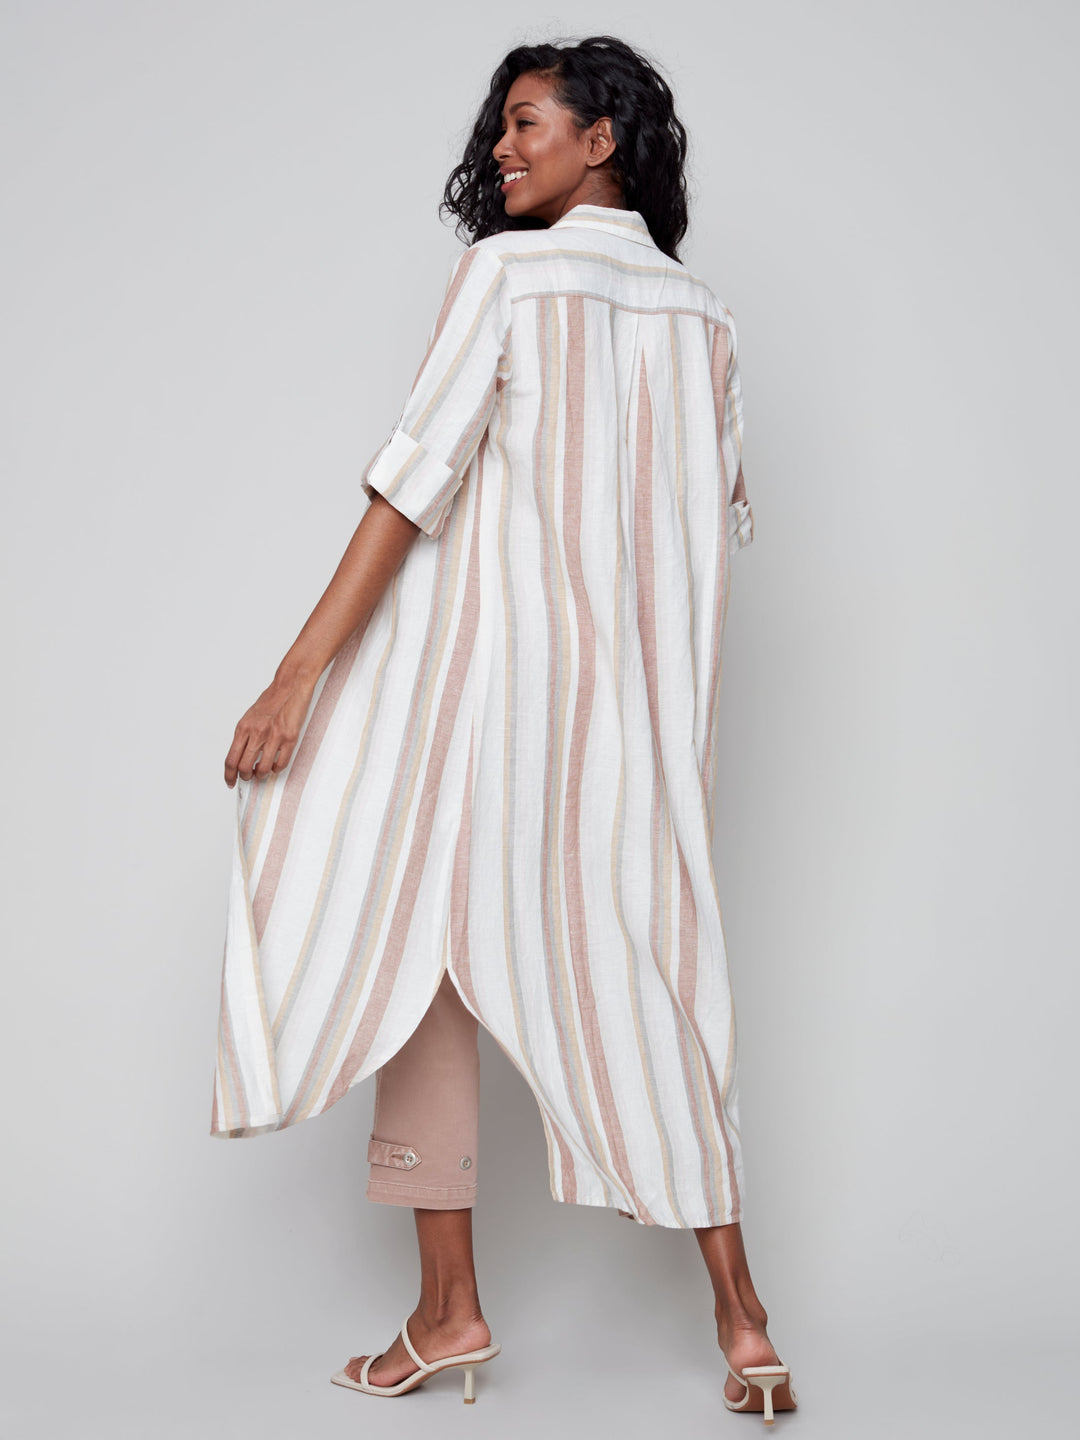 Striped Long ButtonUp Linen Dress